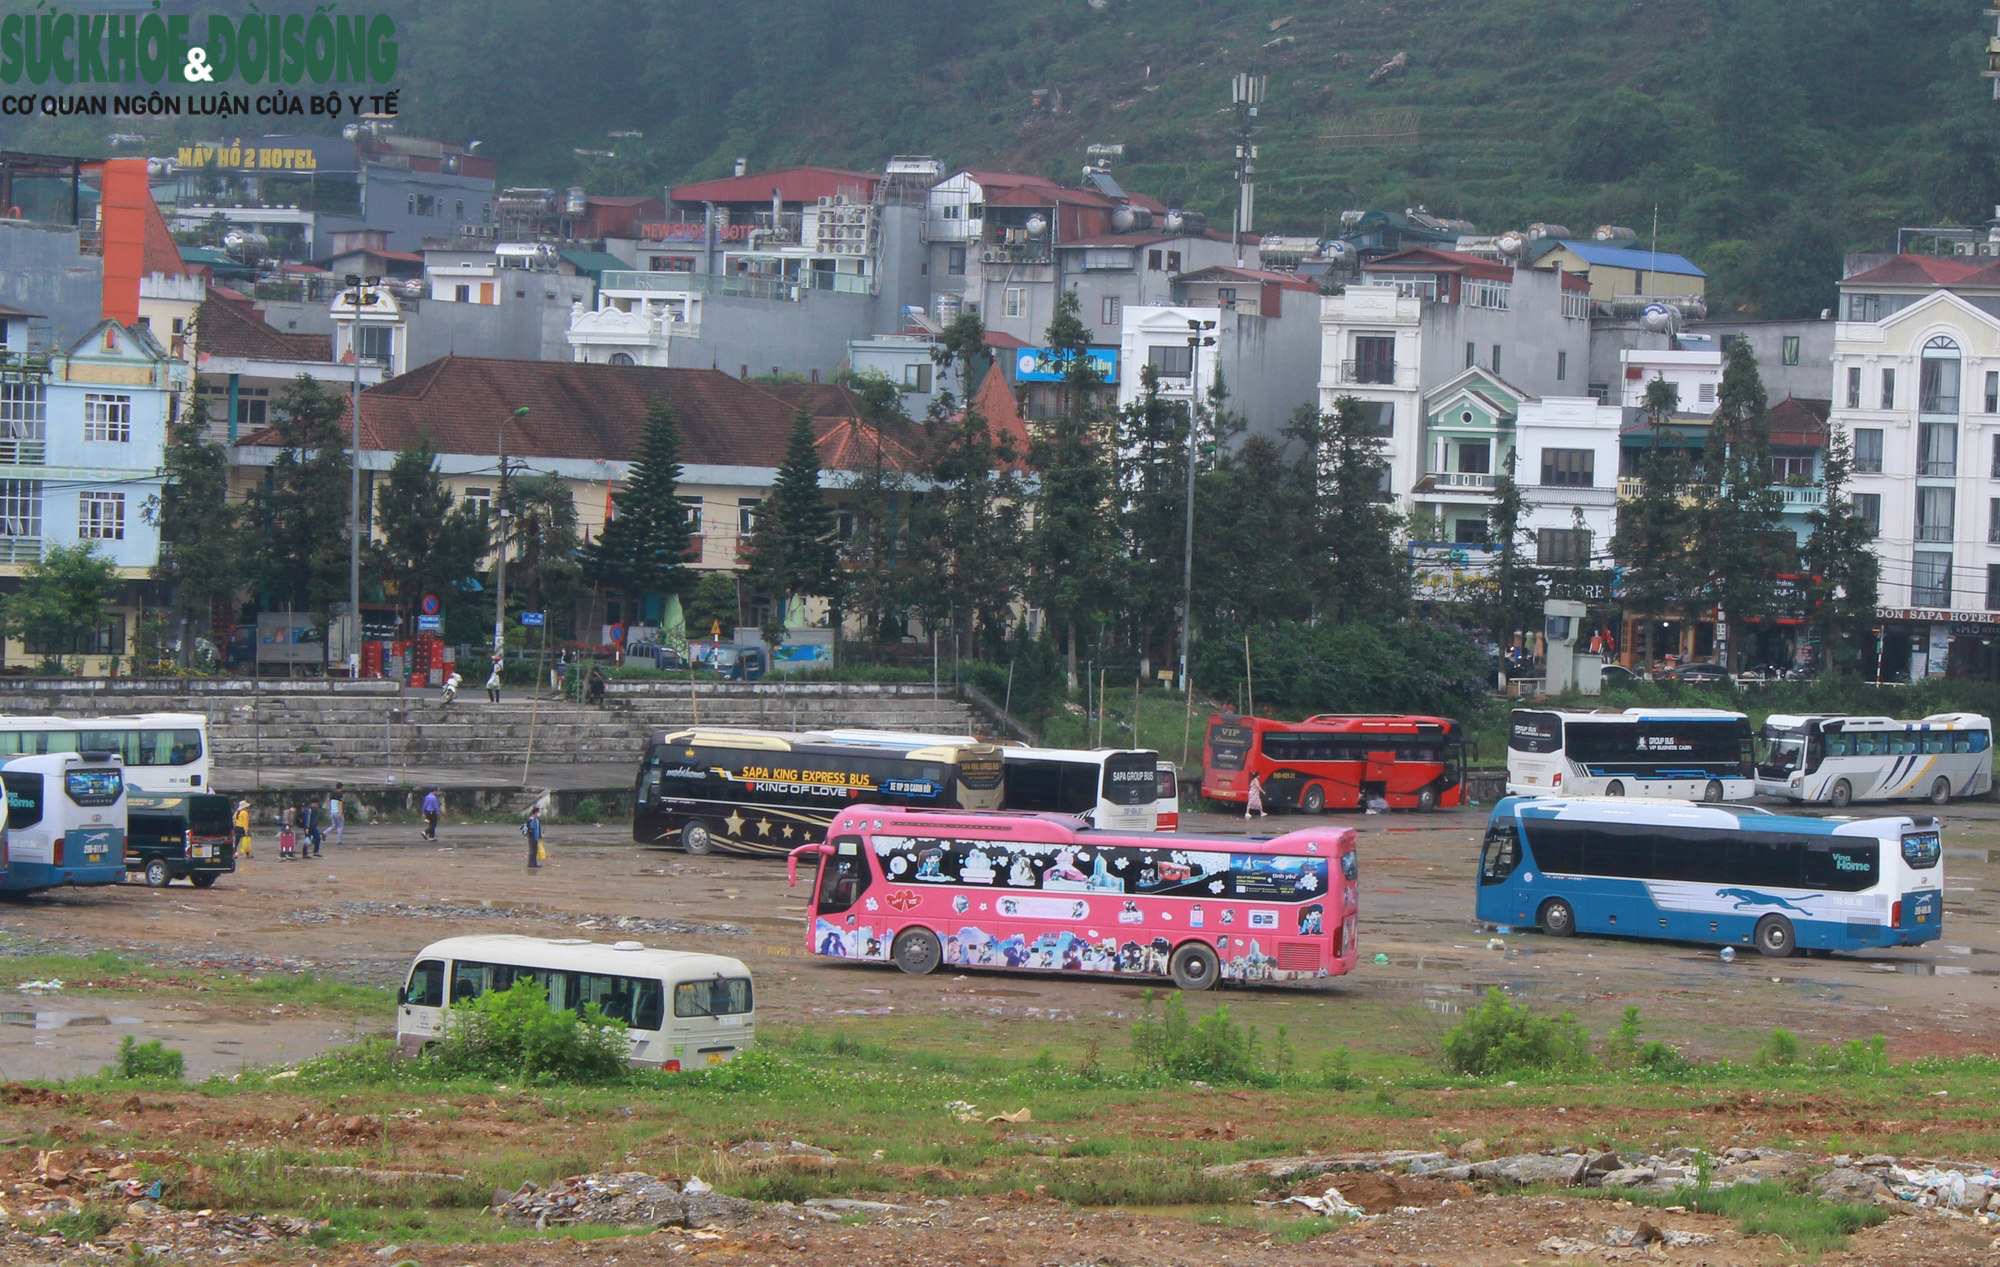 Sau khi bị xử phạt, xe khách gắn biển số Lào tiếp tục hoạt động ‘chui’ ở Việt Nam - Ảnh 2.